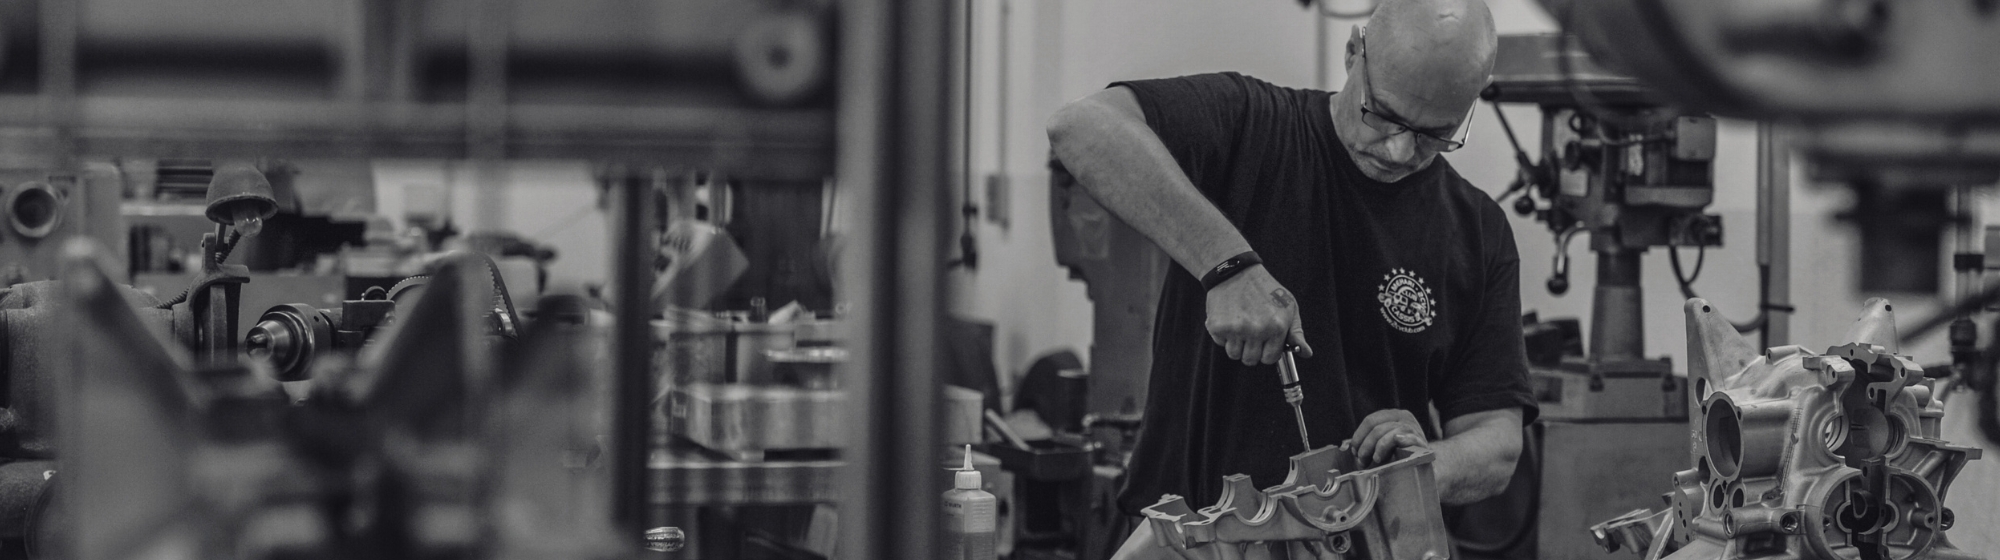 Banniere noir et blanc d'un homme en train de réparer un moteur à la main dans un atelier